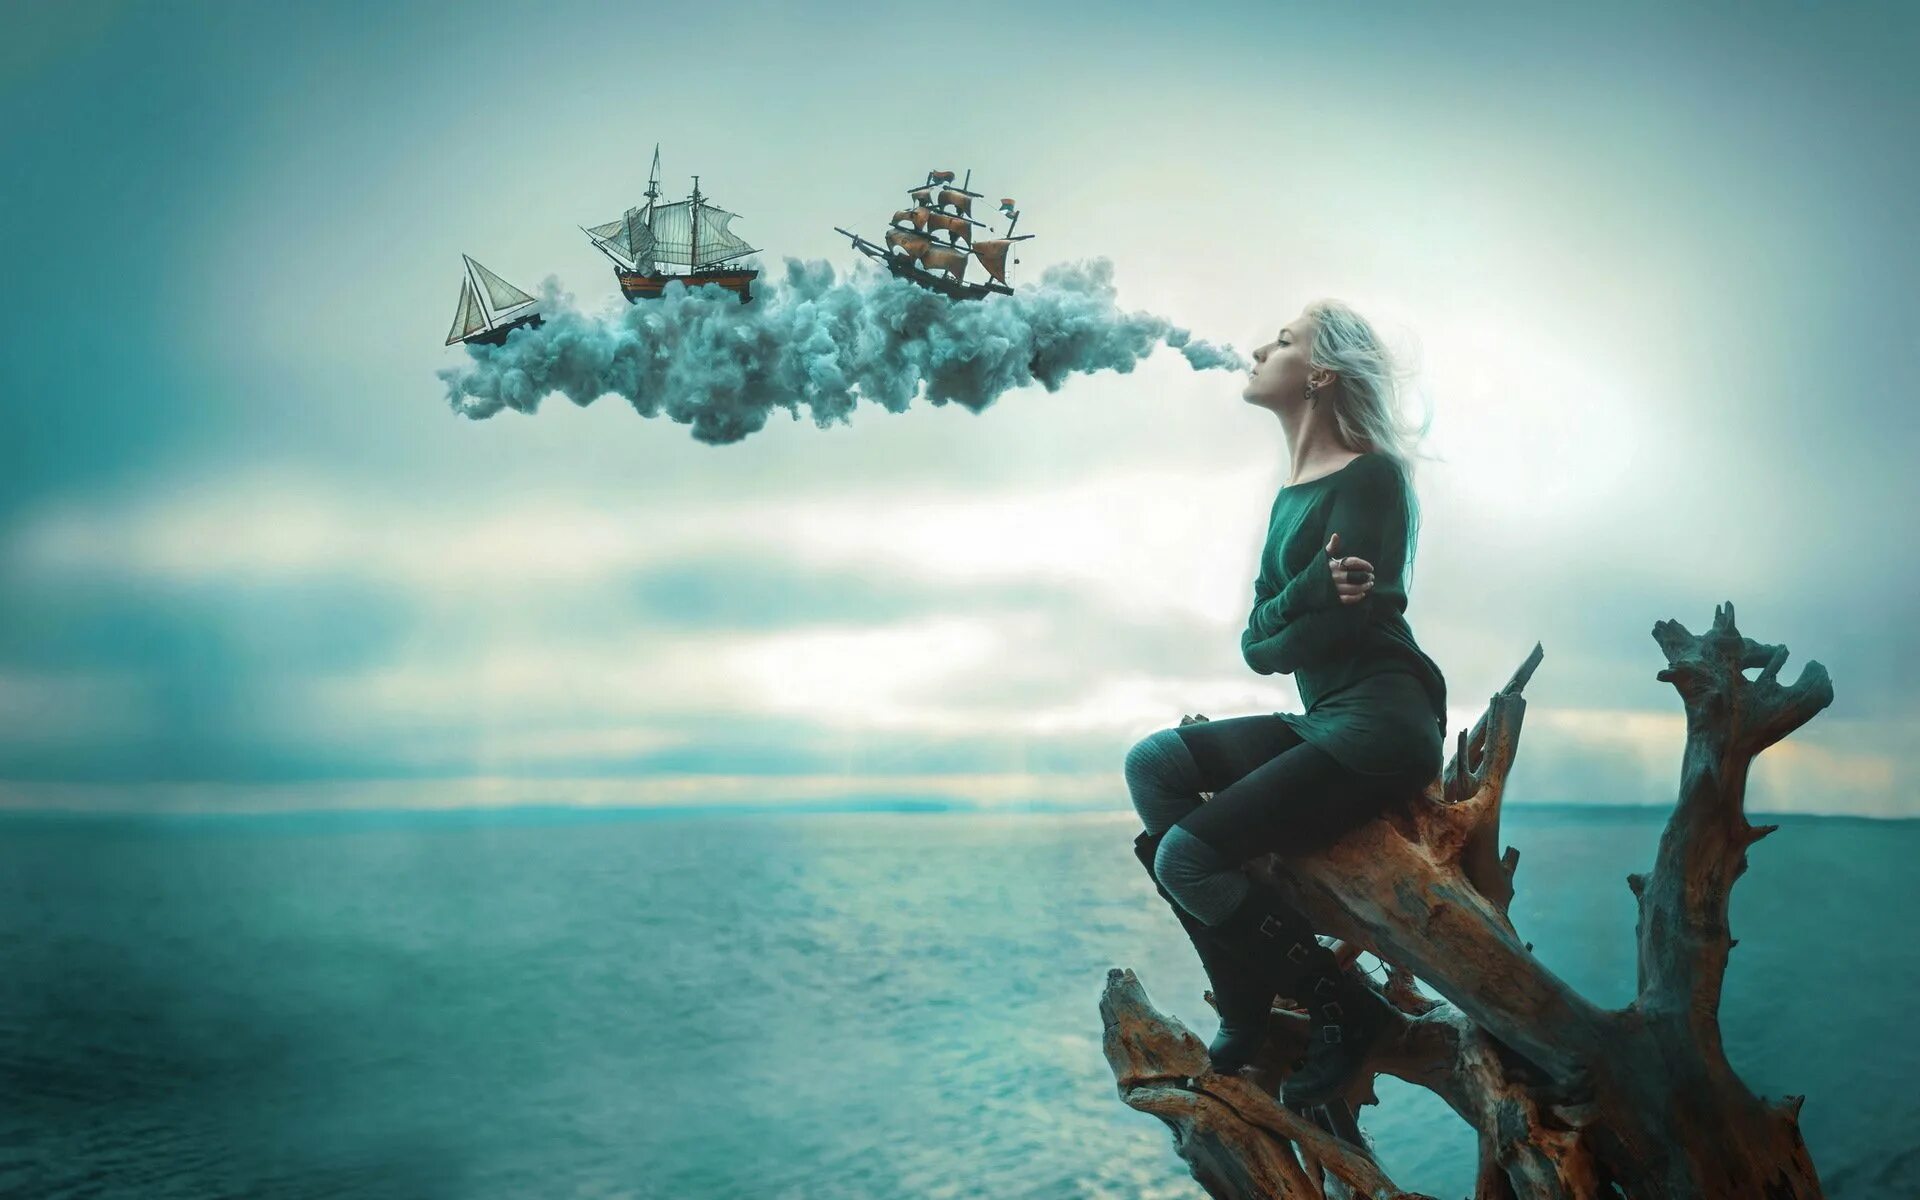 Невероятные мечты. Девушка на корабле. Девушка-море. Фотосессия в стиле фантастика. Фантастическое море.